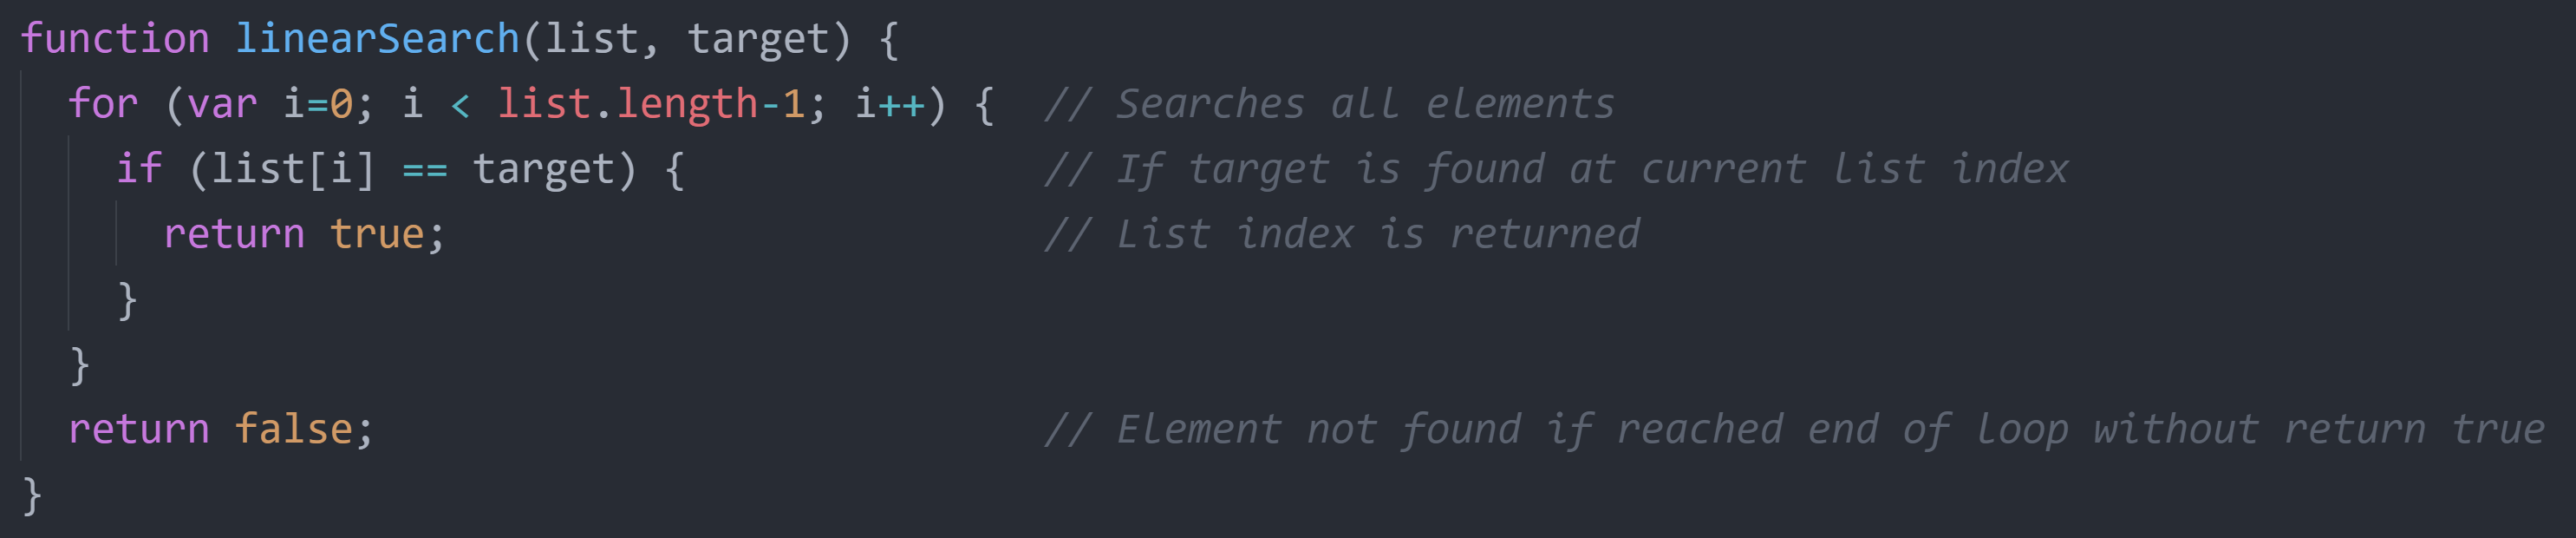 Linear Search Algorithm in JS